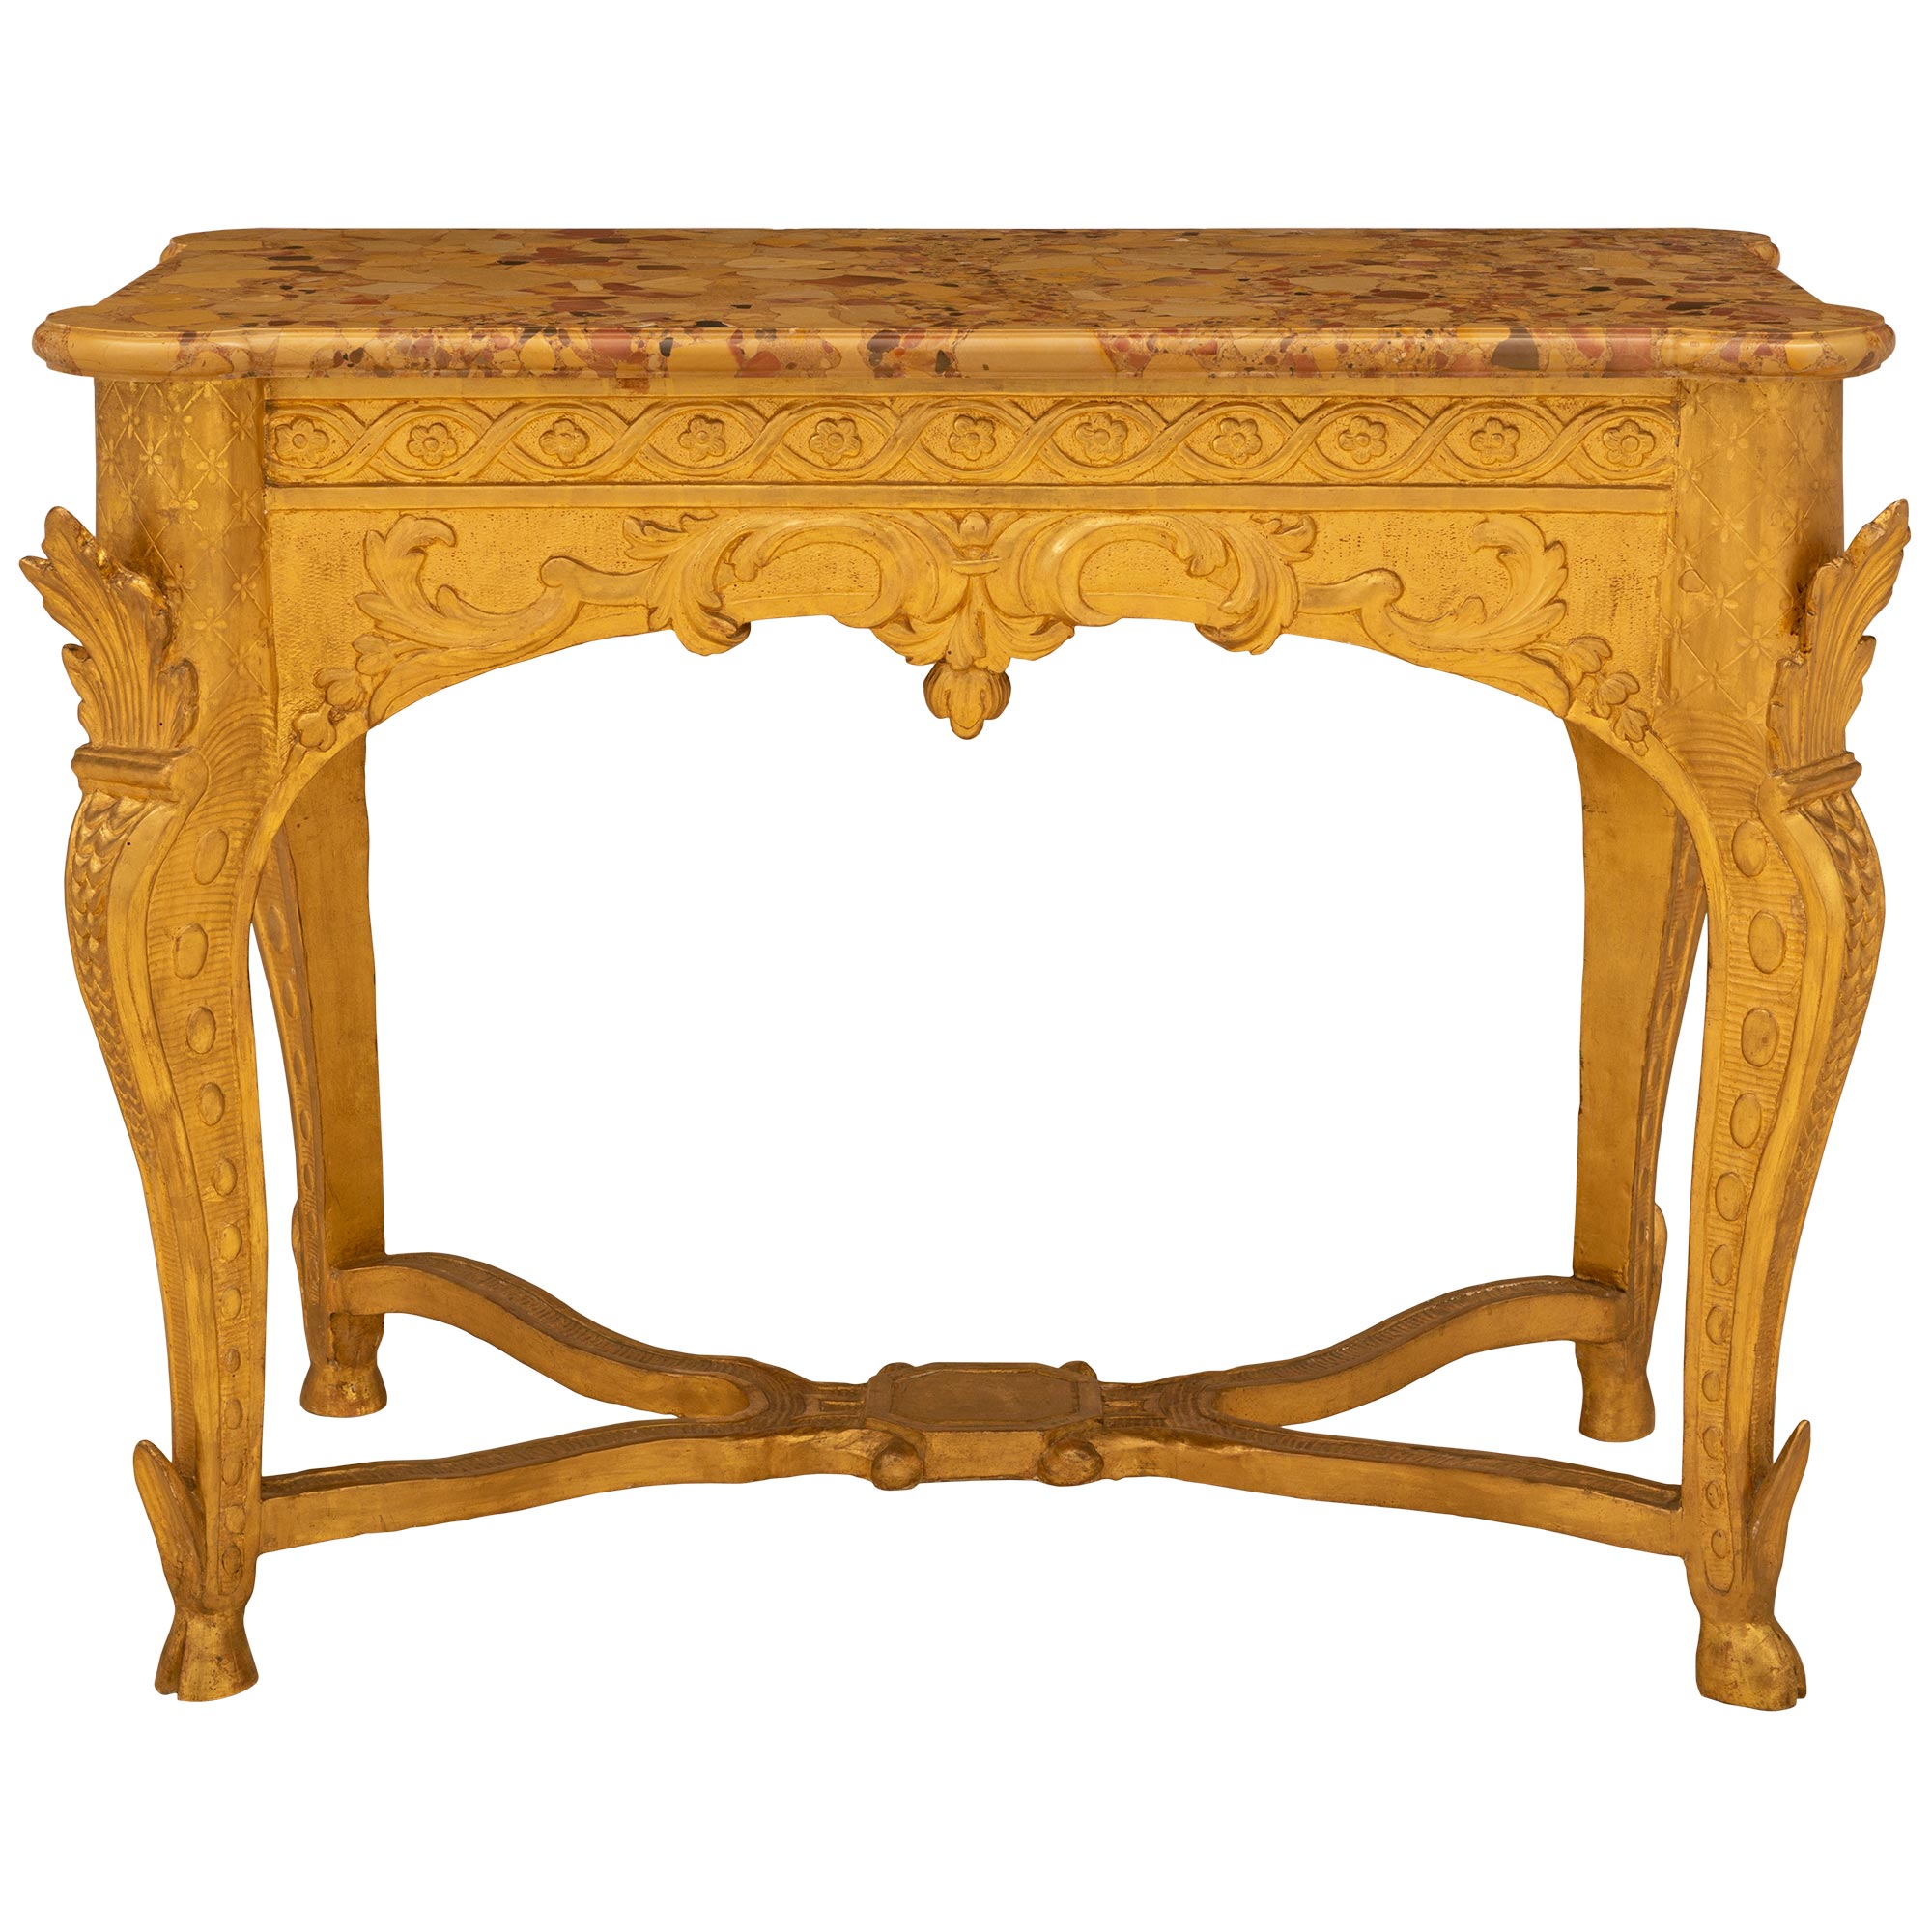 Console en bois doré du XVIIIe siècle de la période Régence française